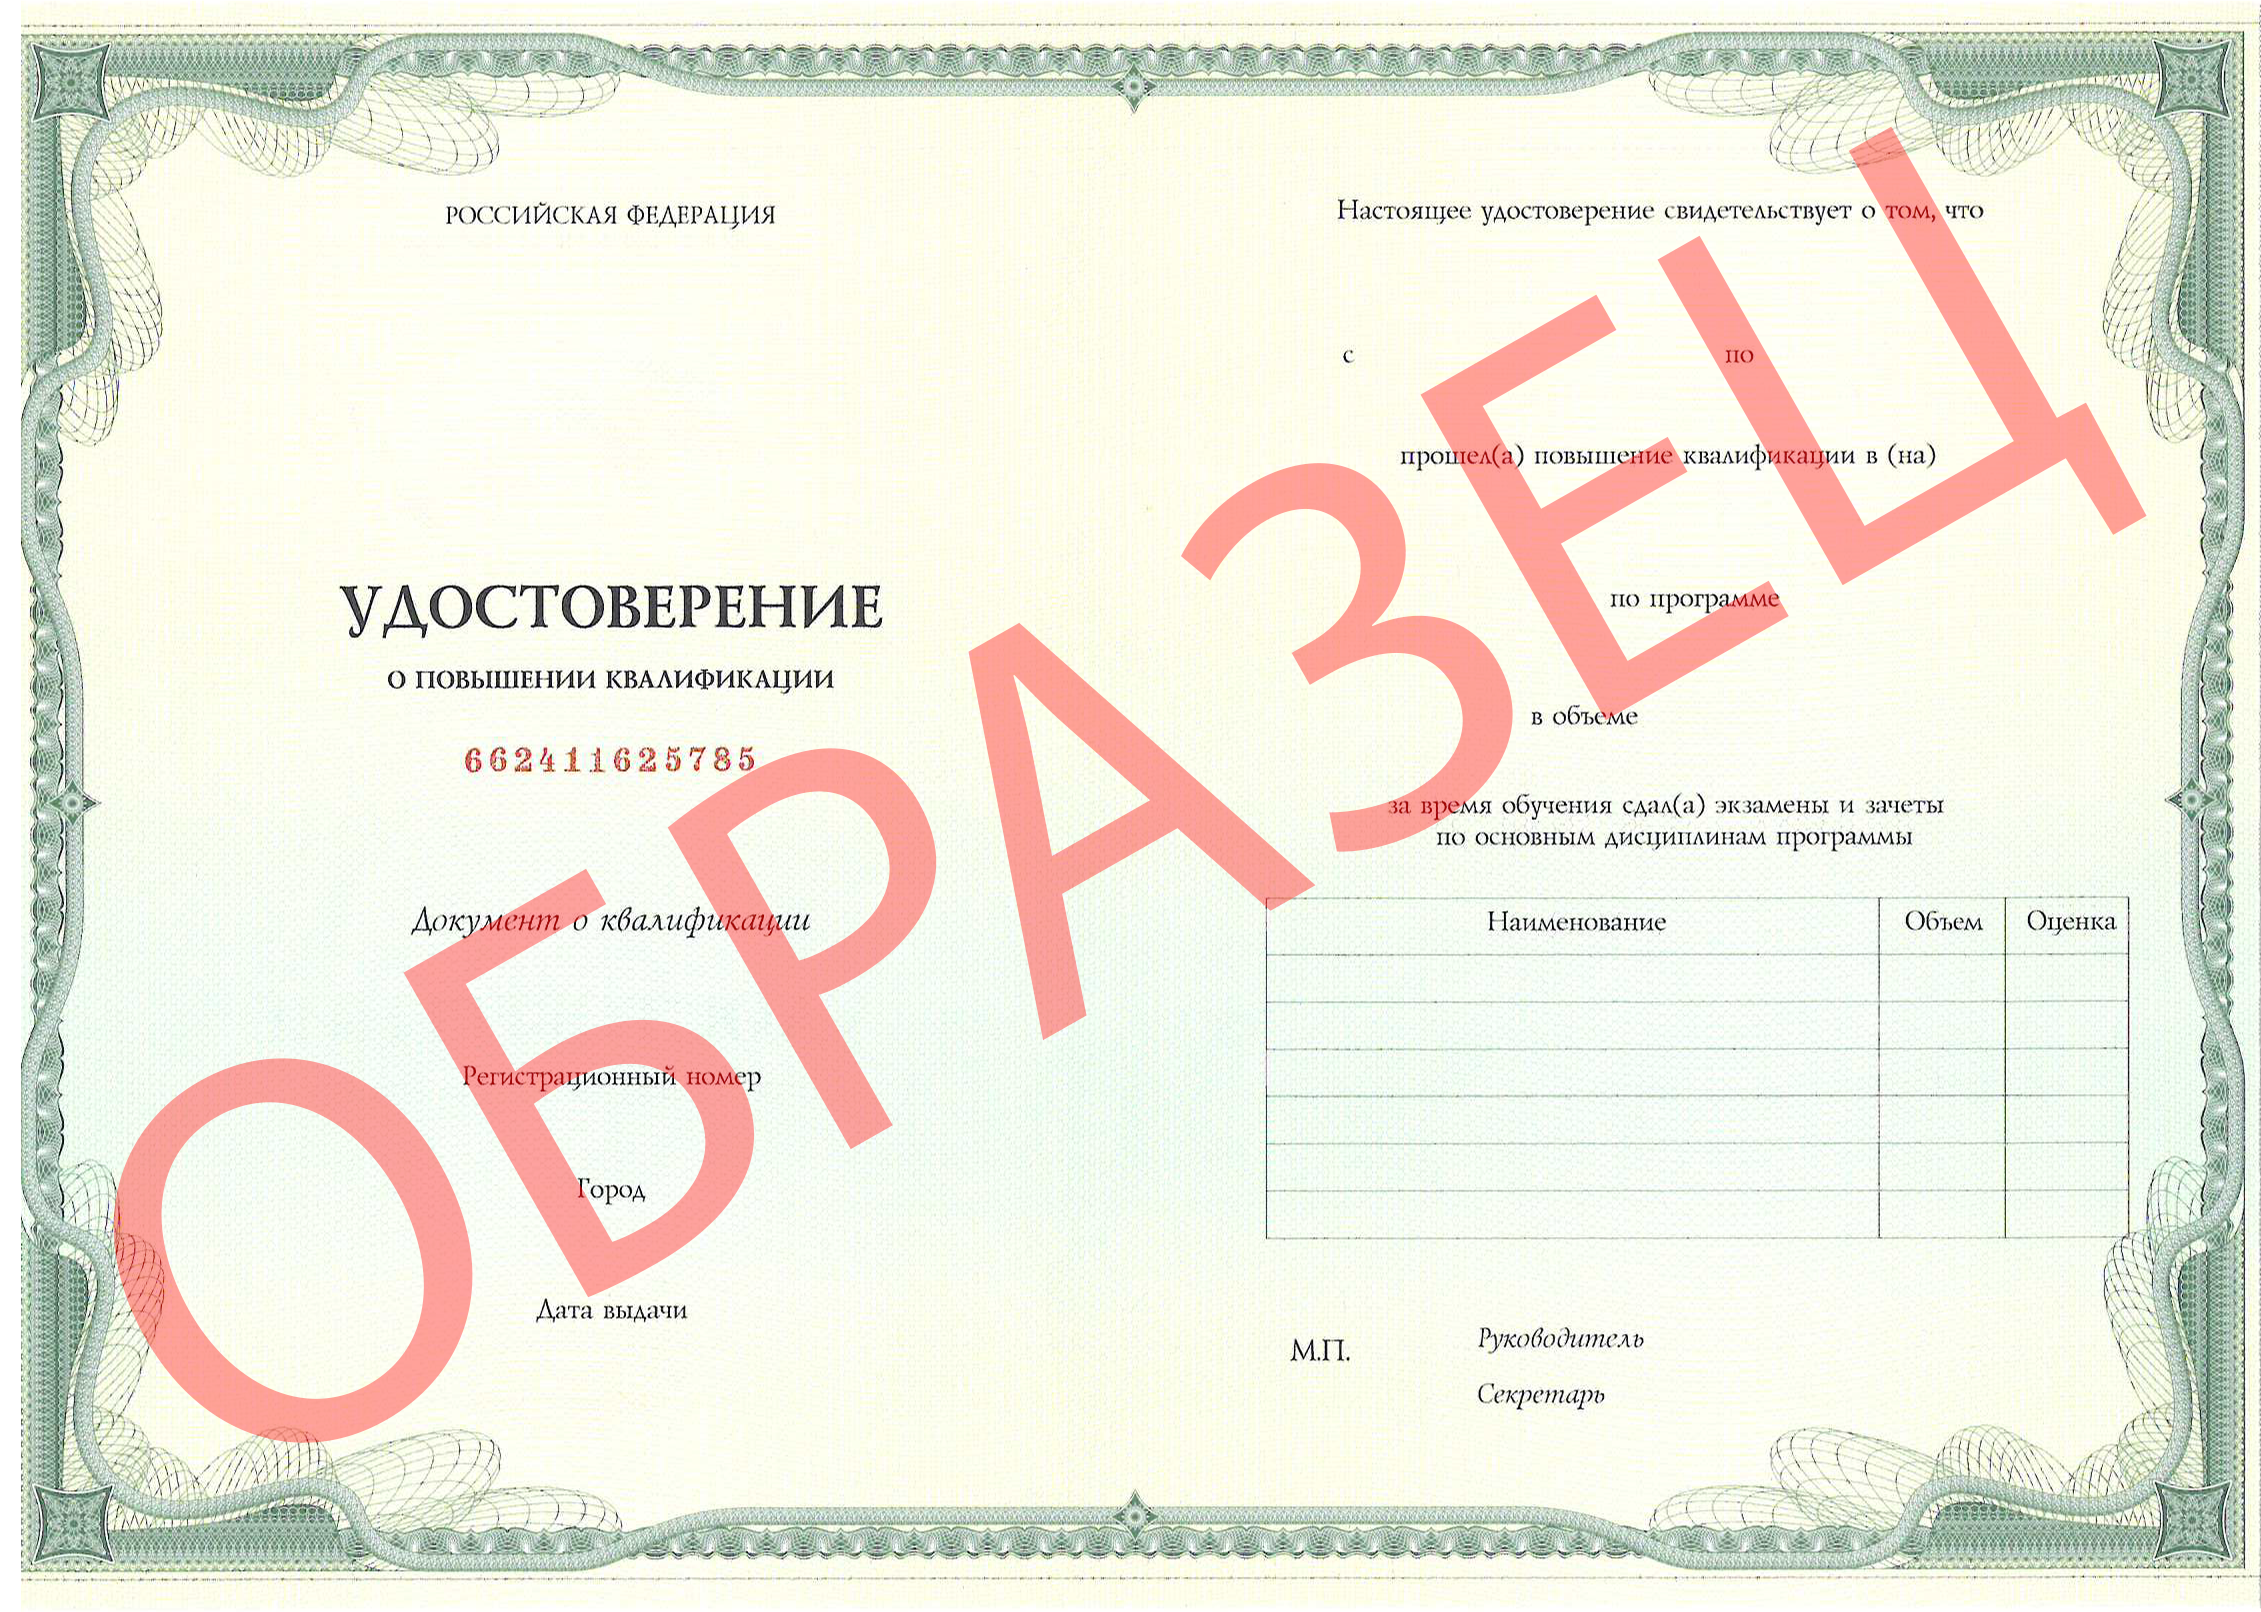 Образец документа о прохождении обучения - Паспорт аккредитации по специальности "Профпатология" апп